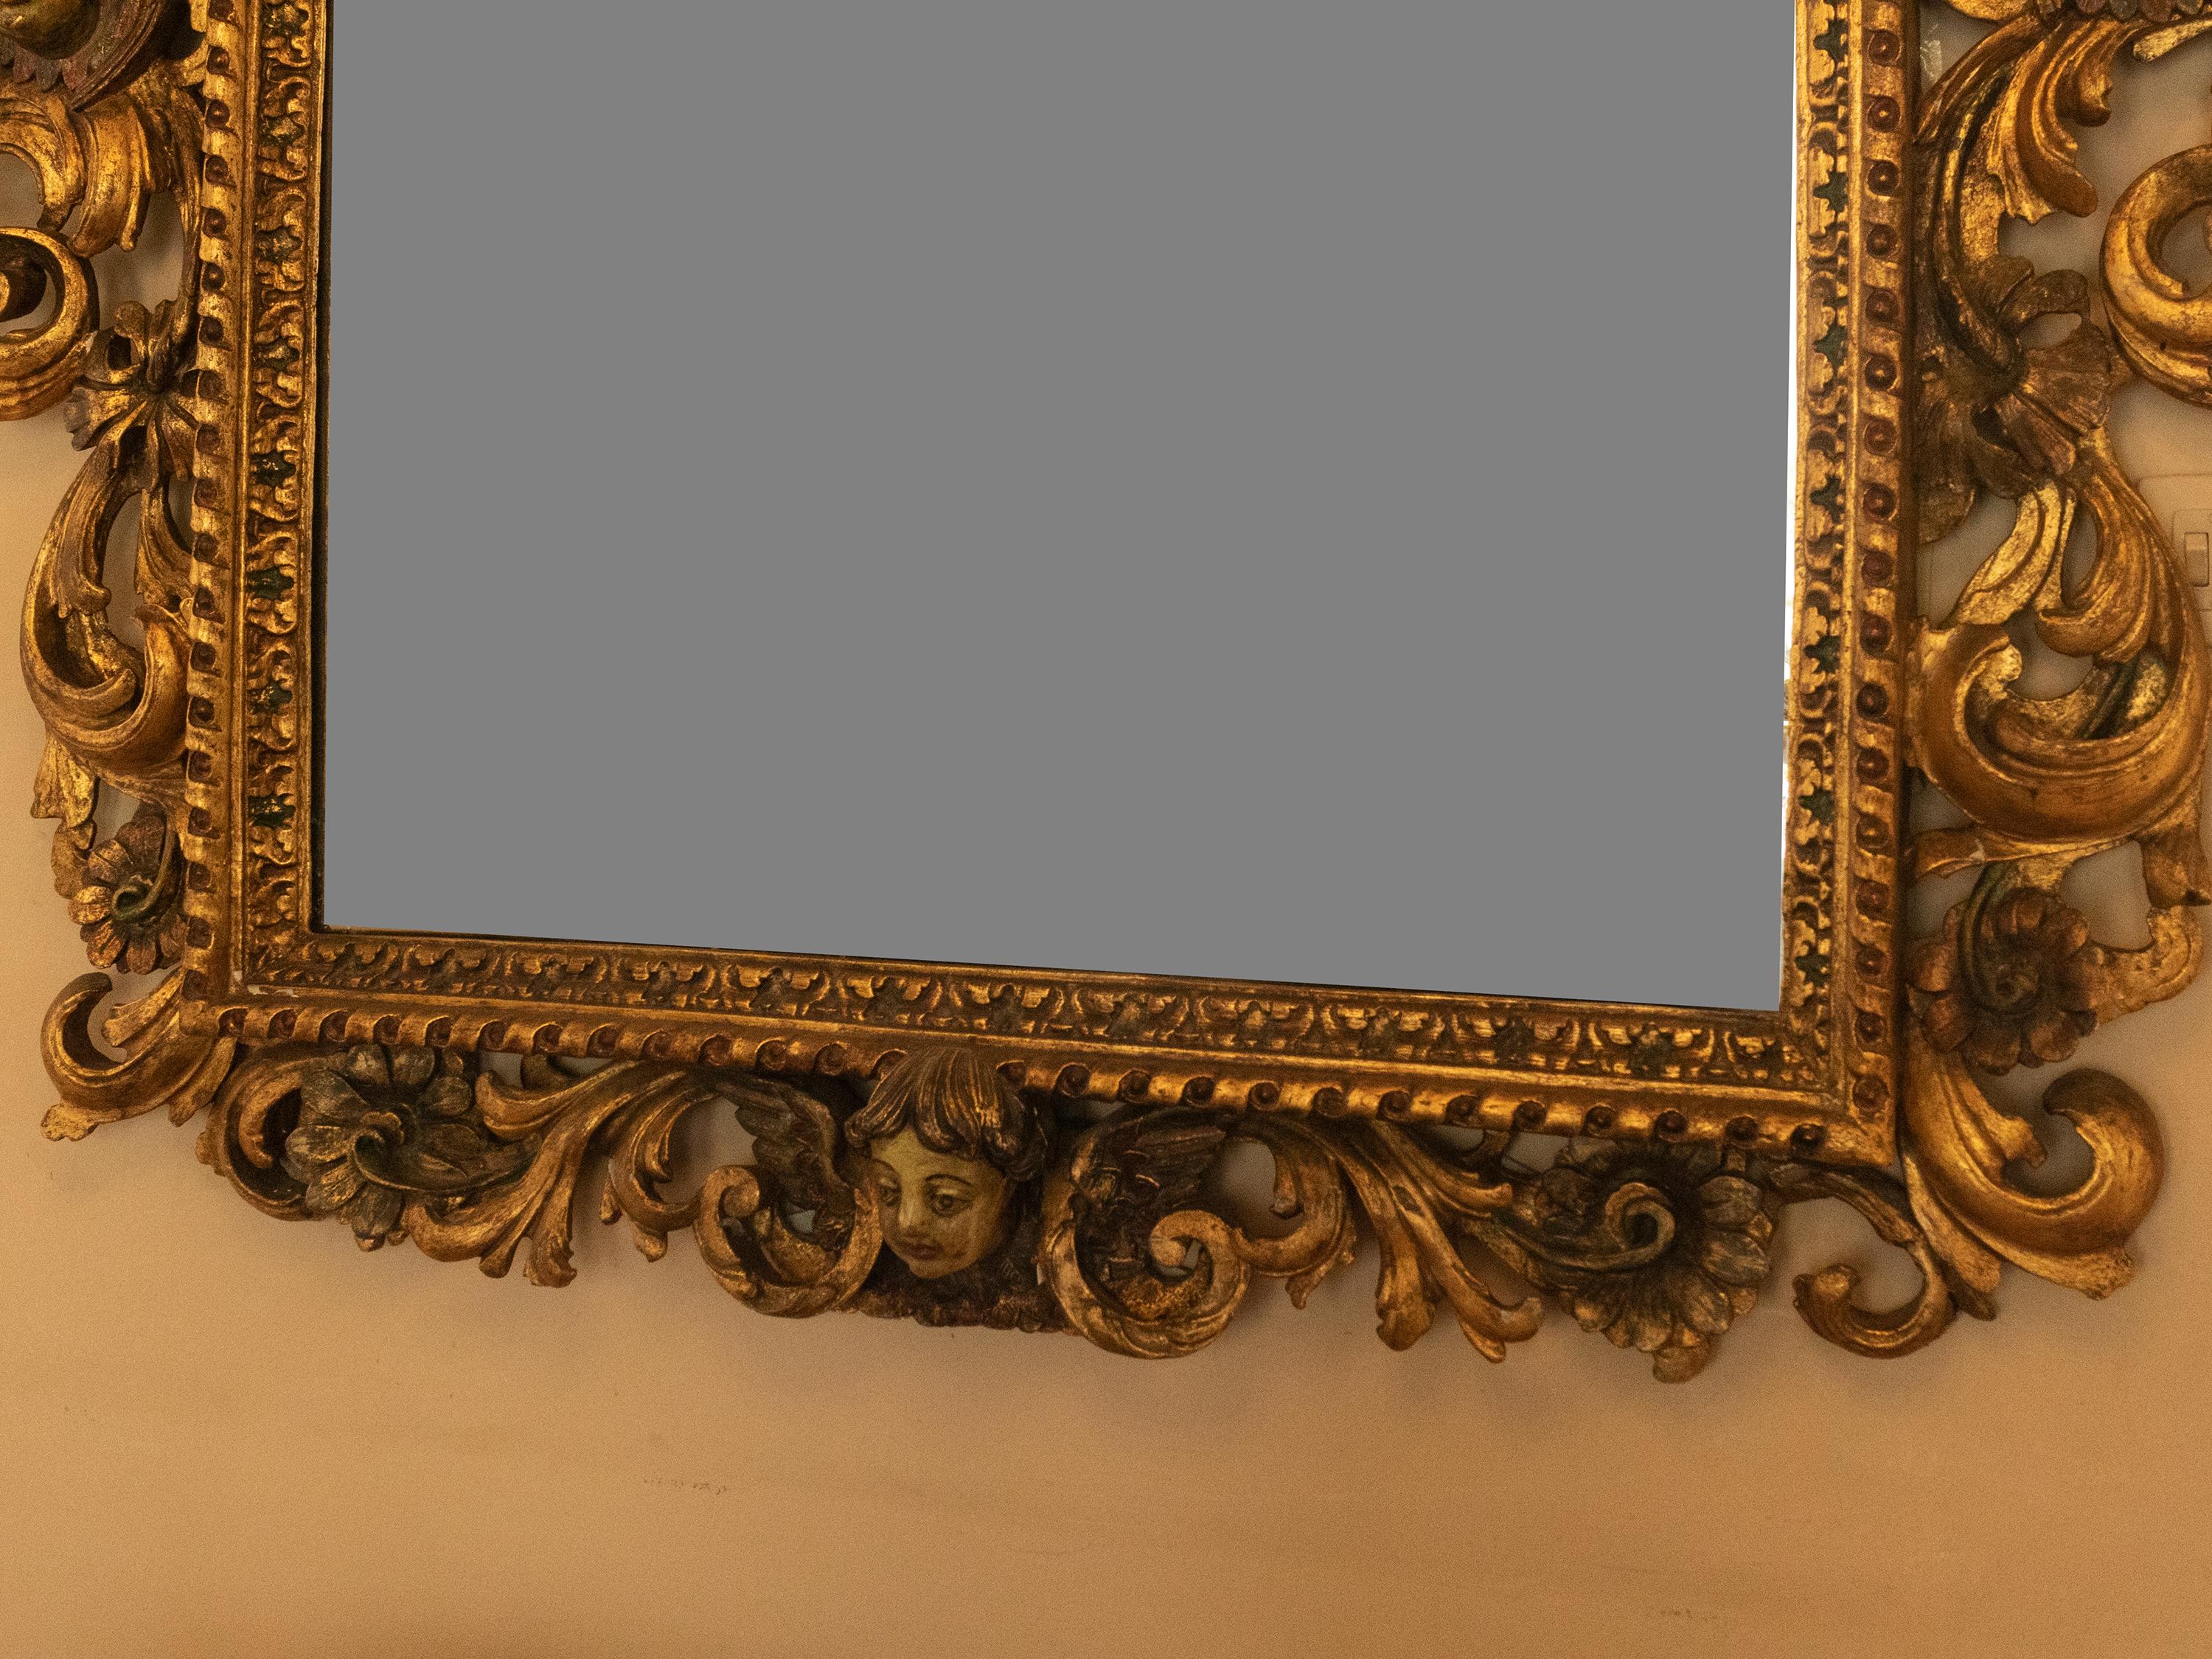 Remarquable et peu commun miroir baroque en châtaignier de l'époque du roi portugais D José, présentant un cadre rococo magnifiquement sculpté et orné d'une finition dorée. Le miroir est surmonté d'ornements en plumes et de décorations florales,